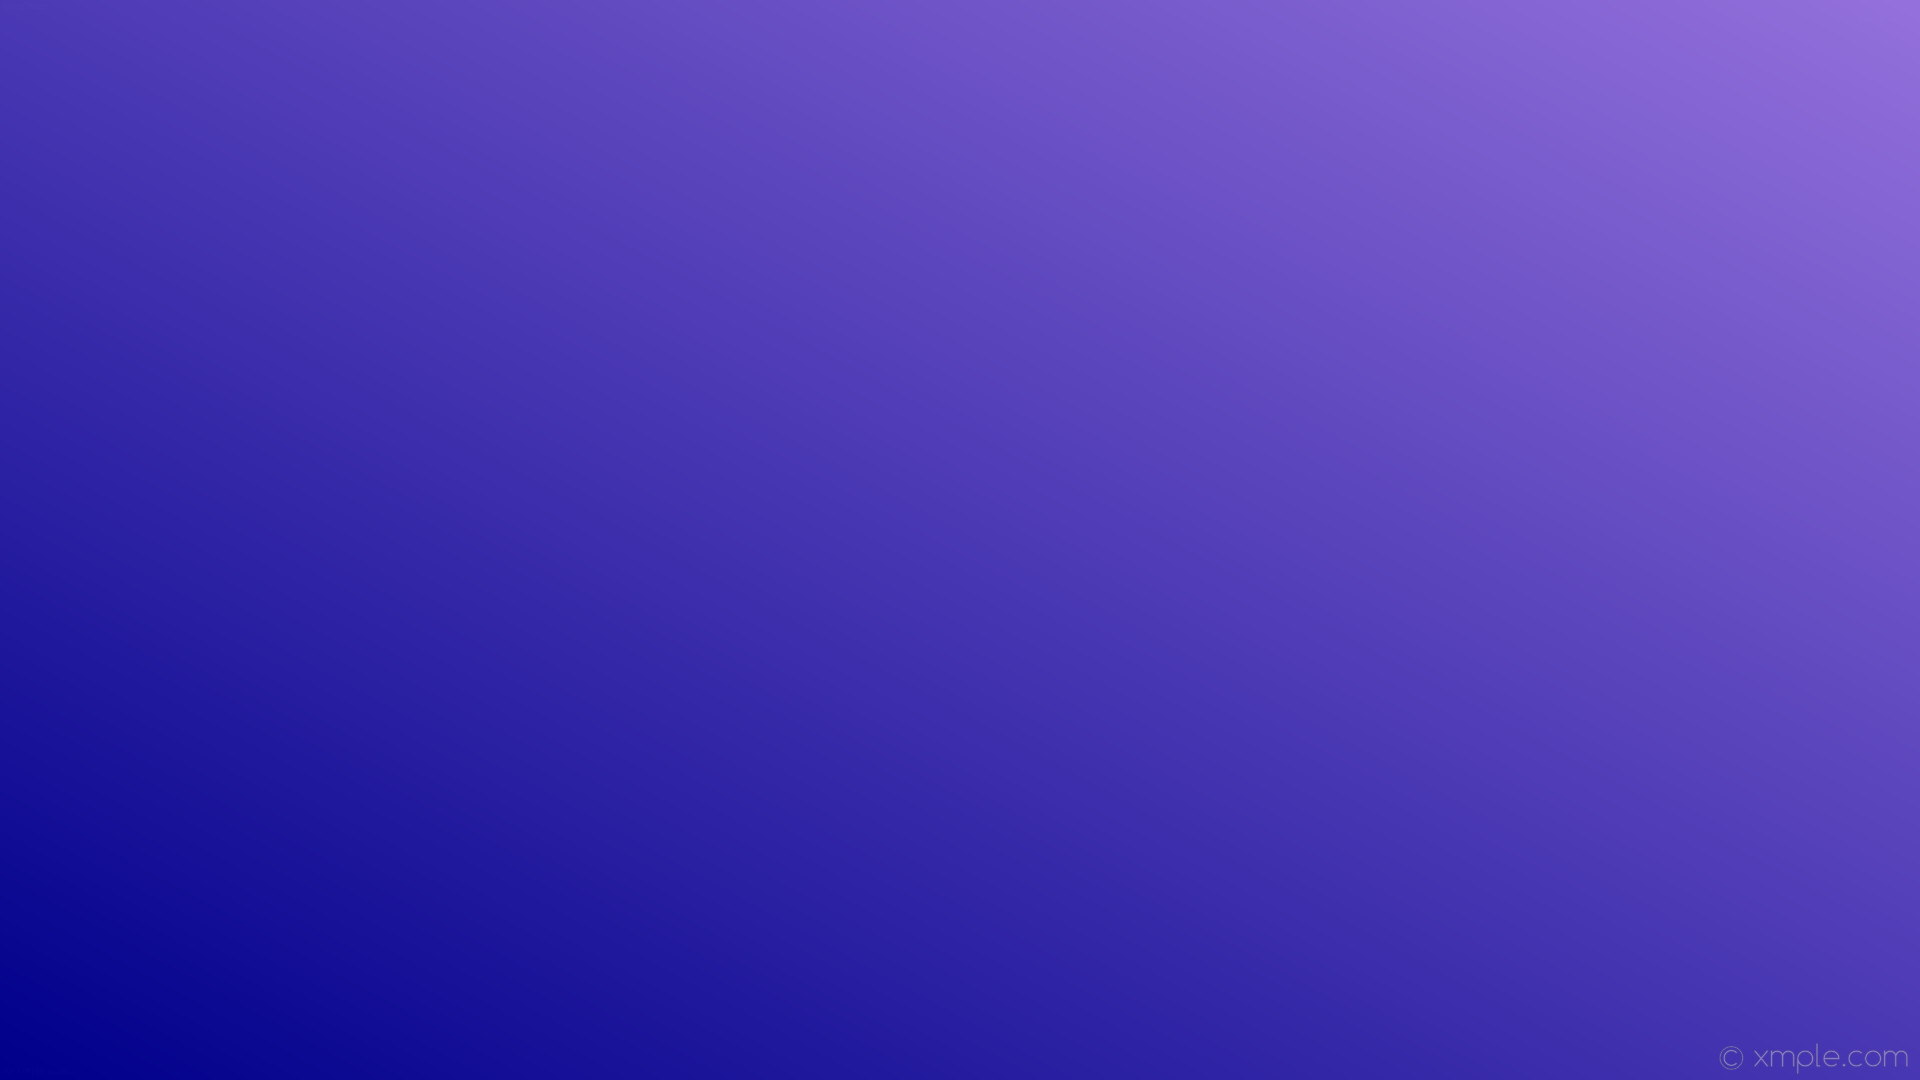 1920x1080 wallpaper blue purple gradient linear dark blue medium purple #00008b  #9370db 210Â°